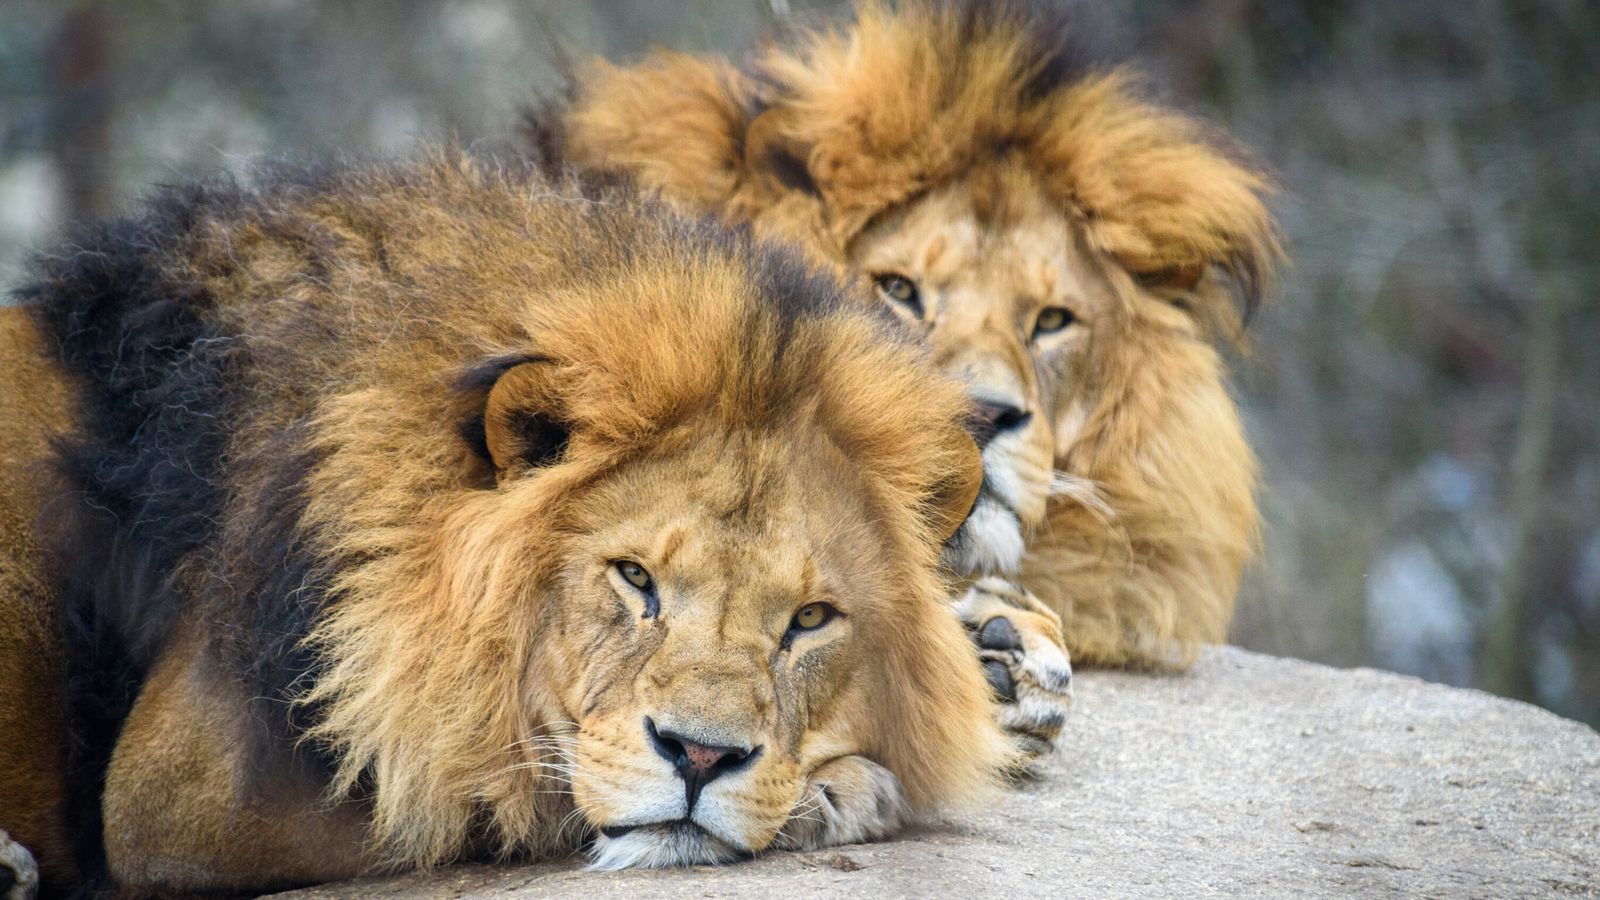 Vua sư tử mới có thể sống yên bình trong bầy sư tử sau khi đánh bại vua sư tử cũ không? - Ảnh 1.